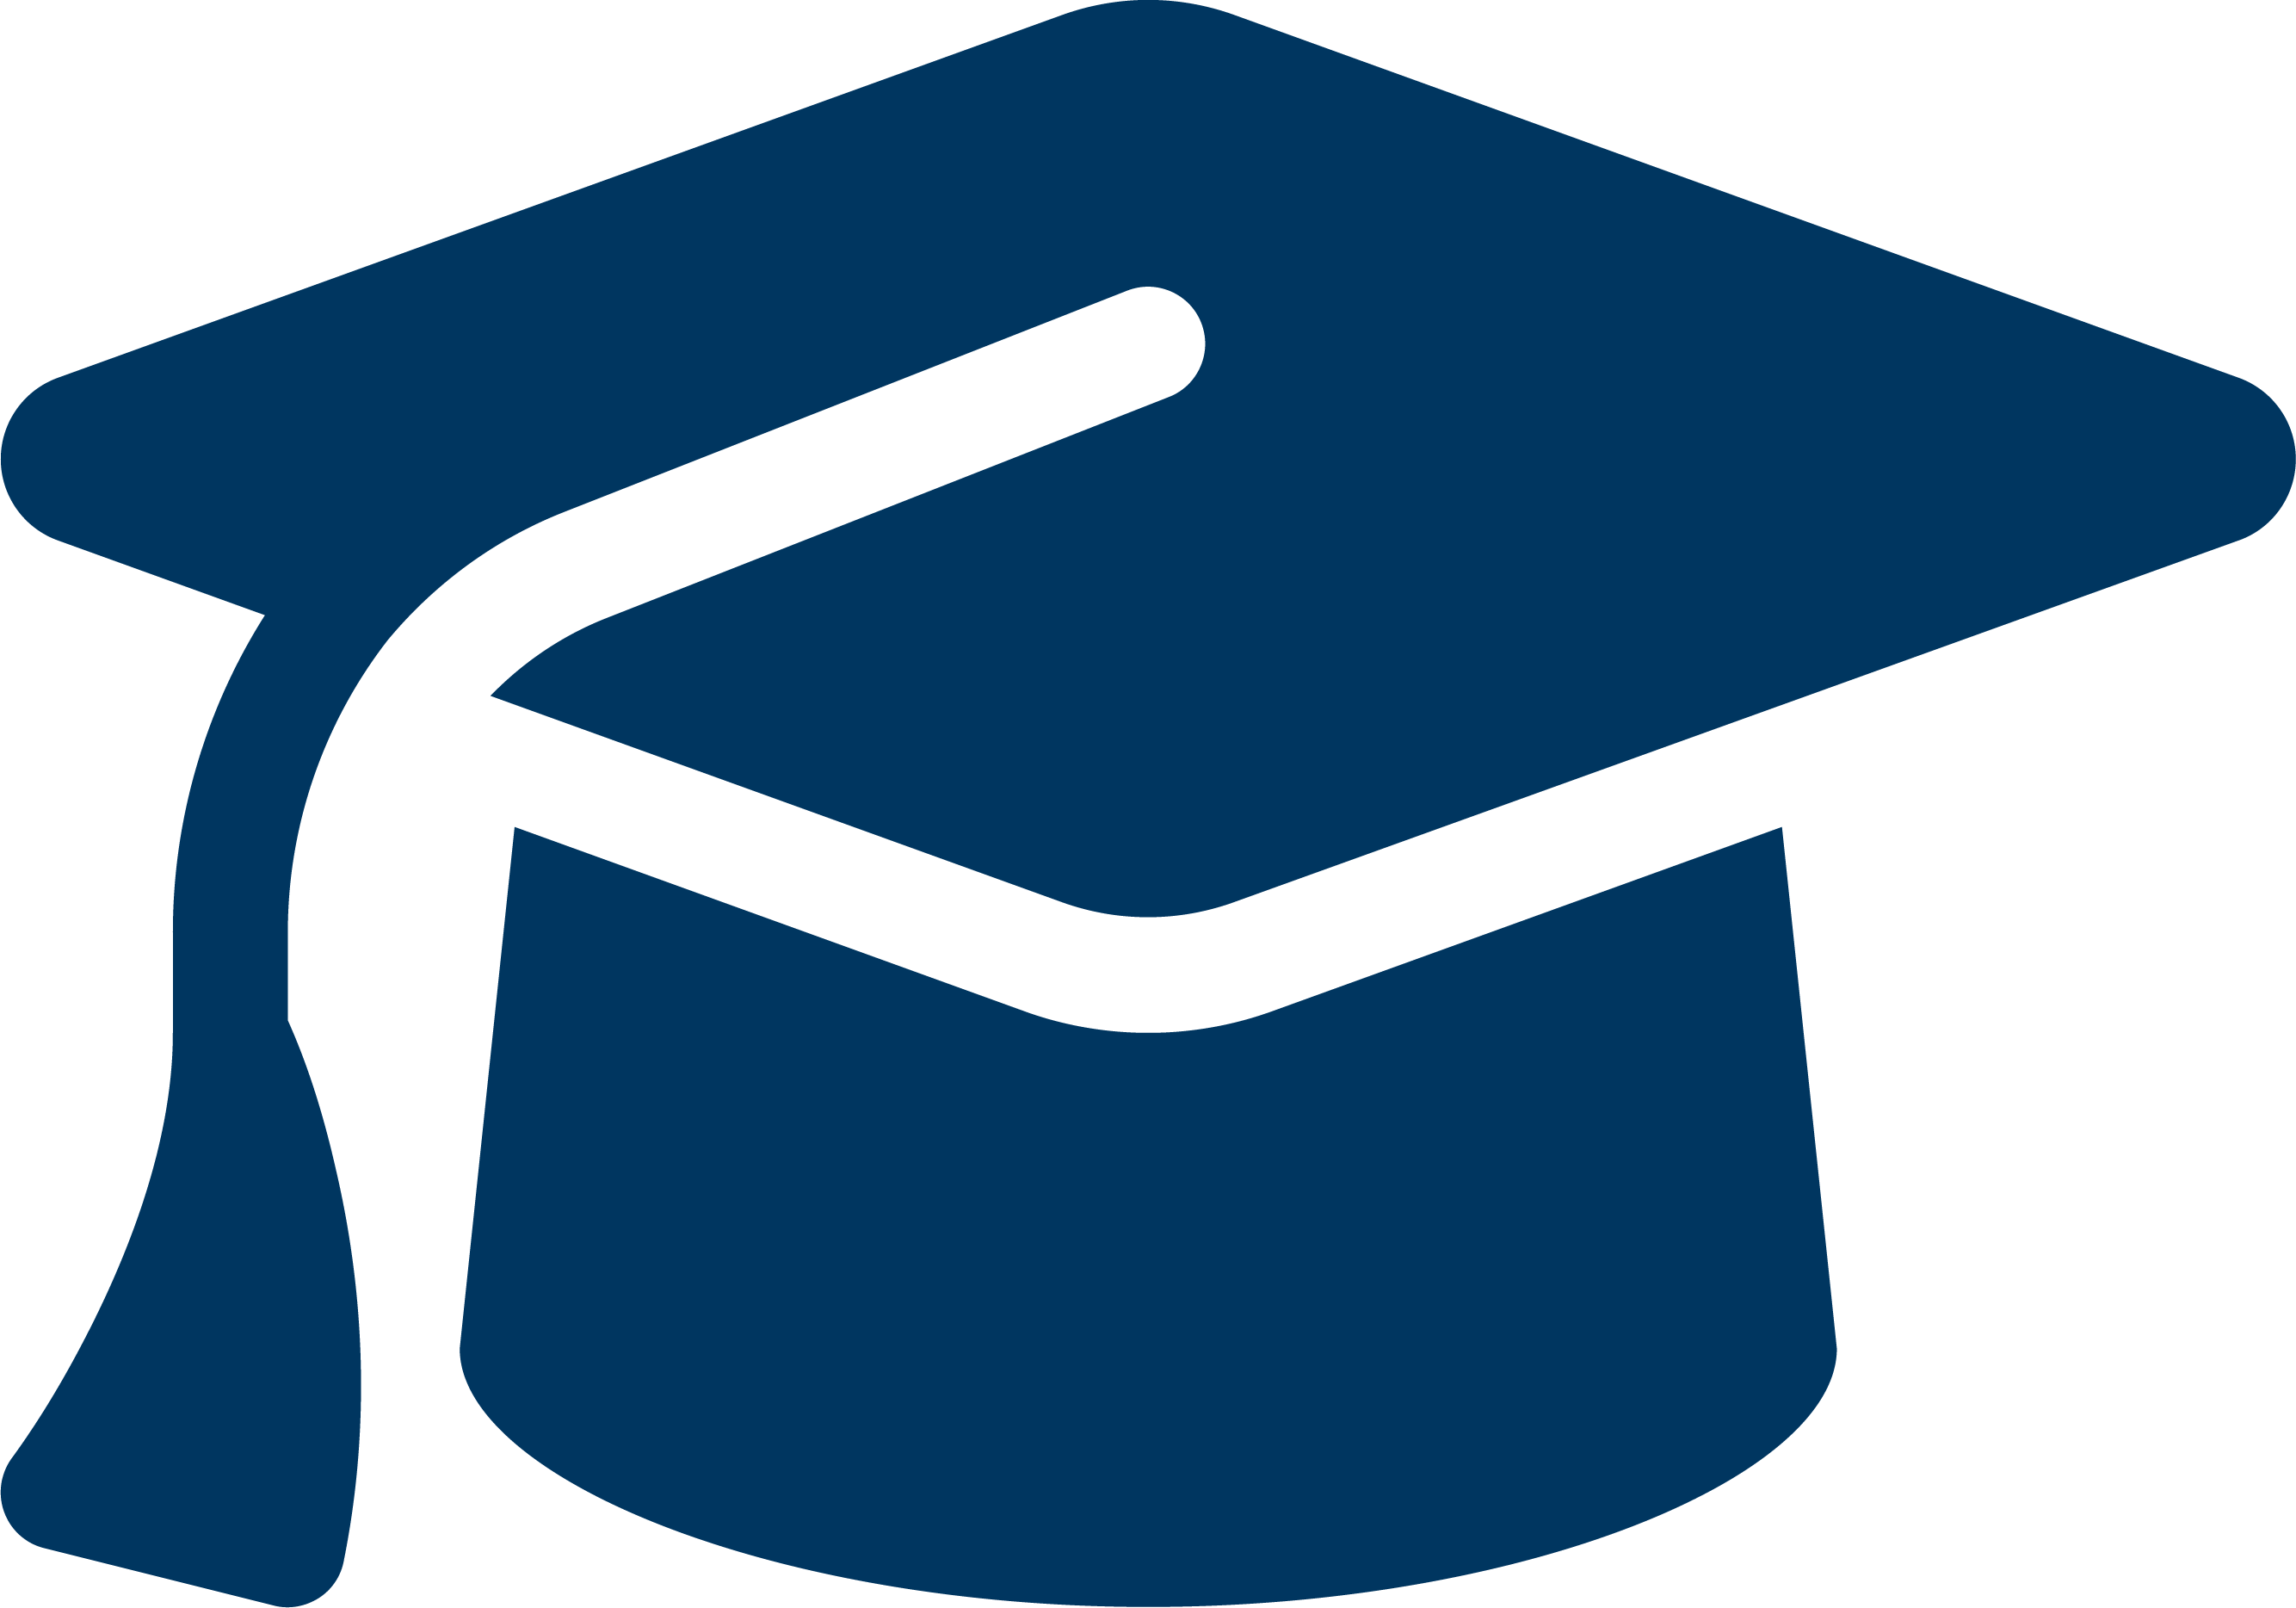 graduation cap - student success hub logo